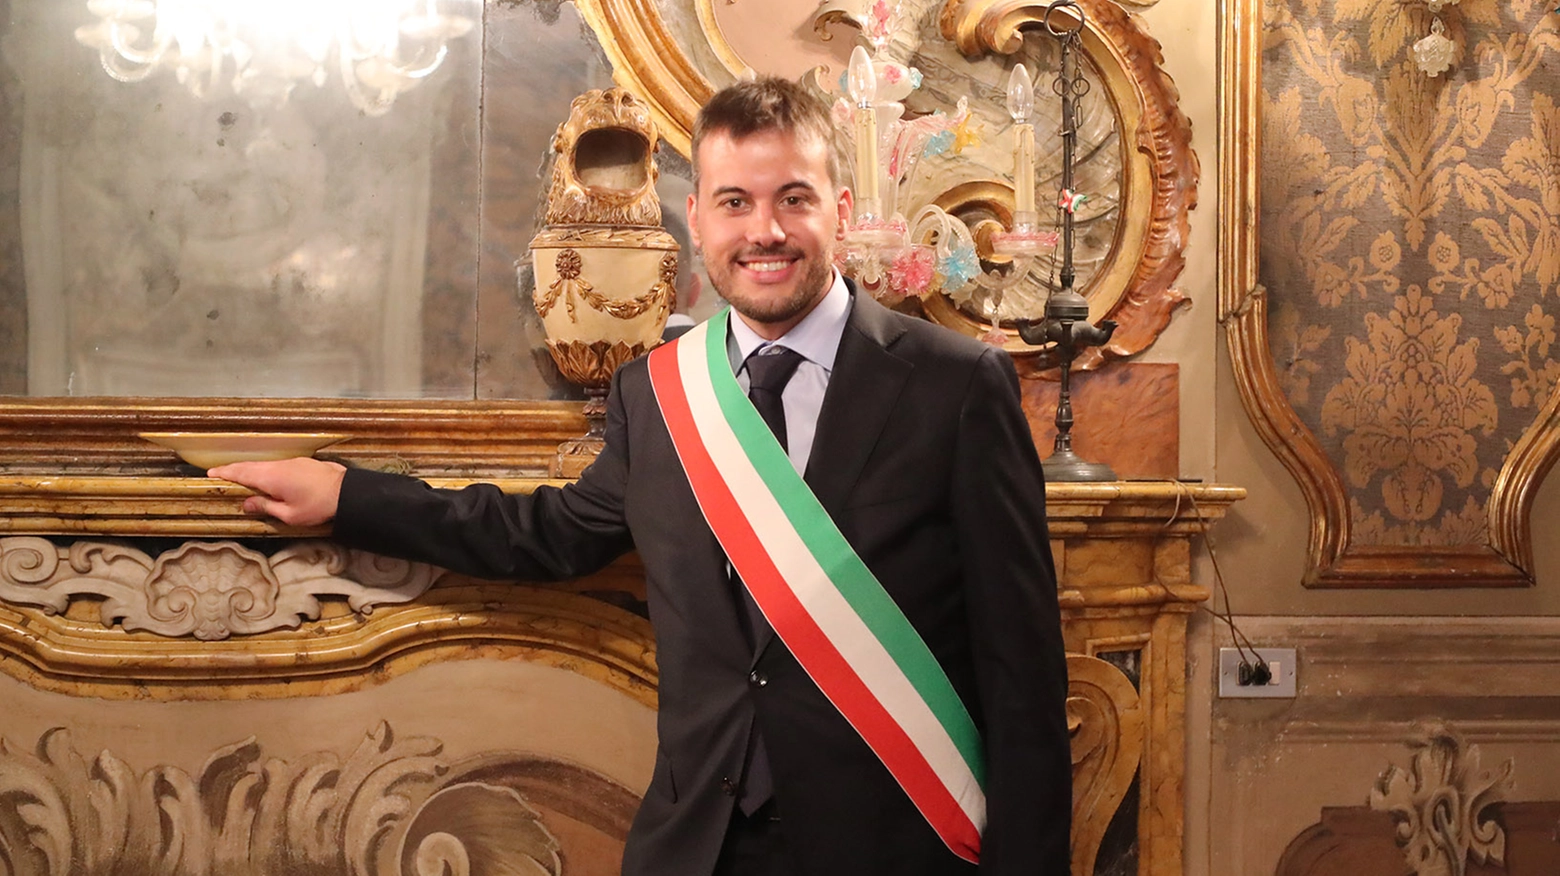 Marco Panieri al primo giorno da sindaco di Imola (Isolapress)